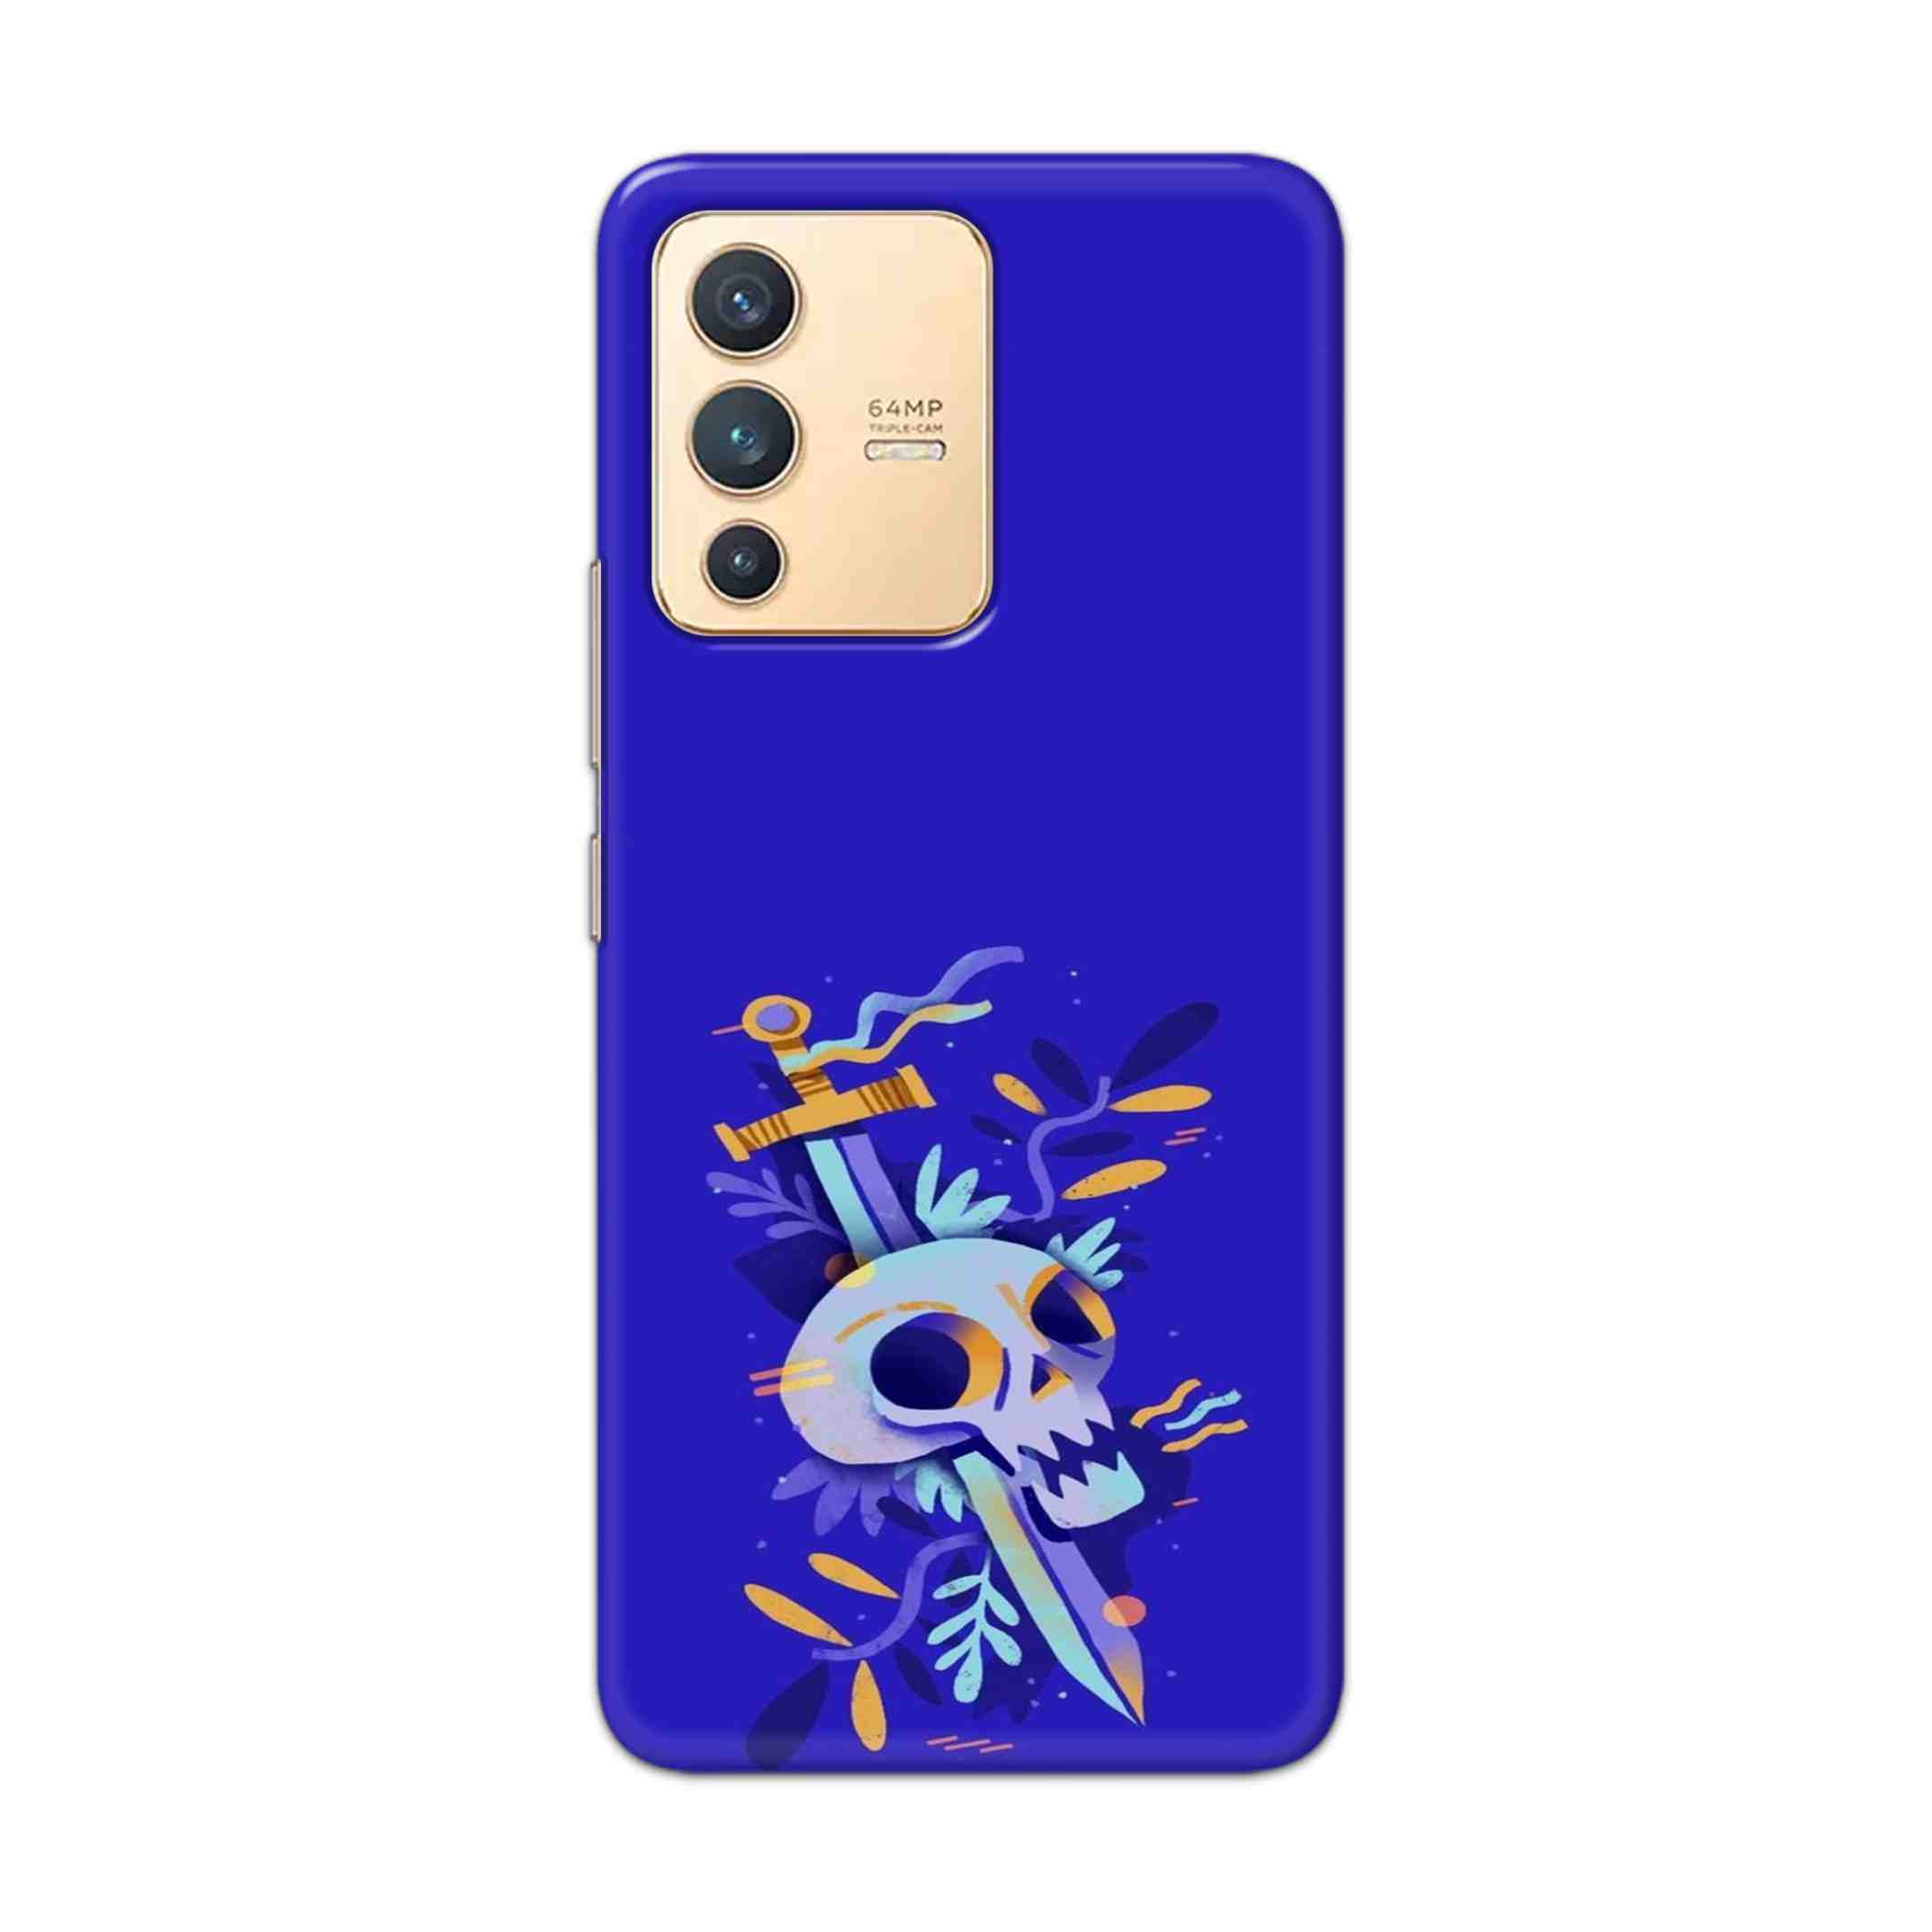 Buy Blue Skull Hard Back Mobile Phone Case Cover For Vivo V23 Online